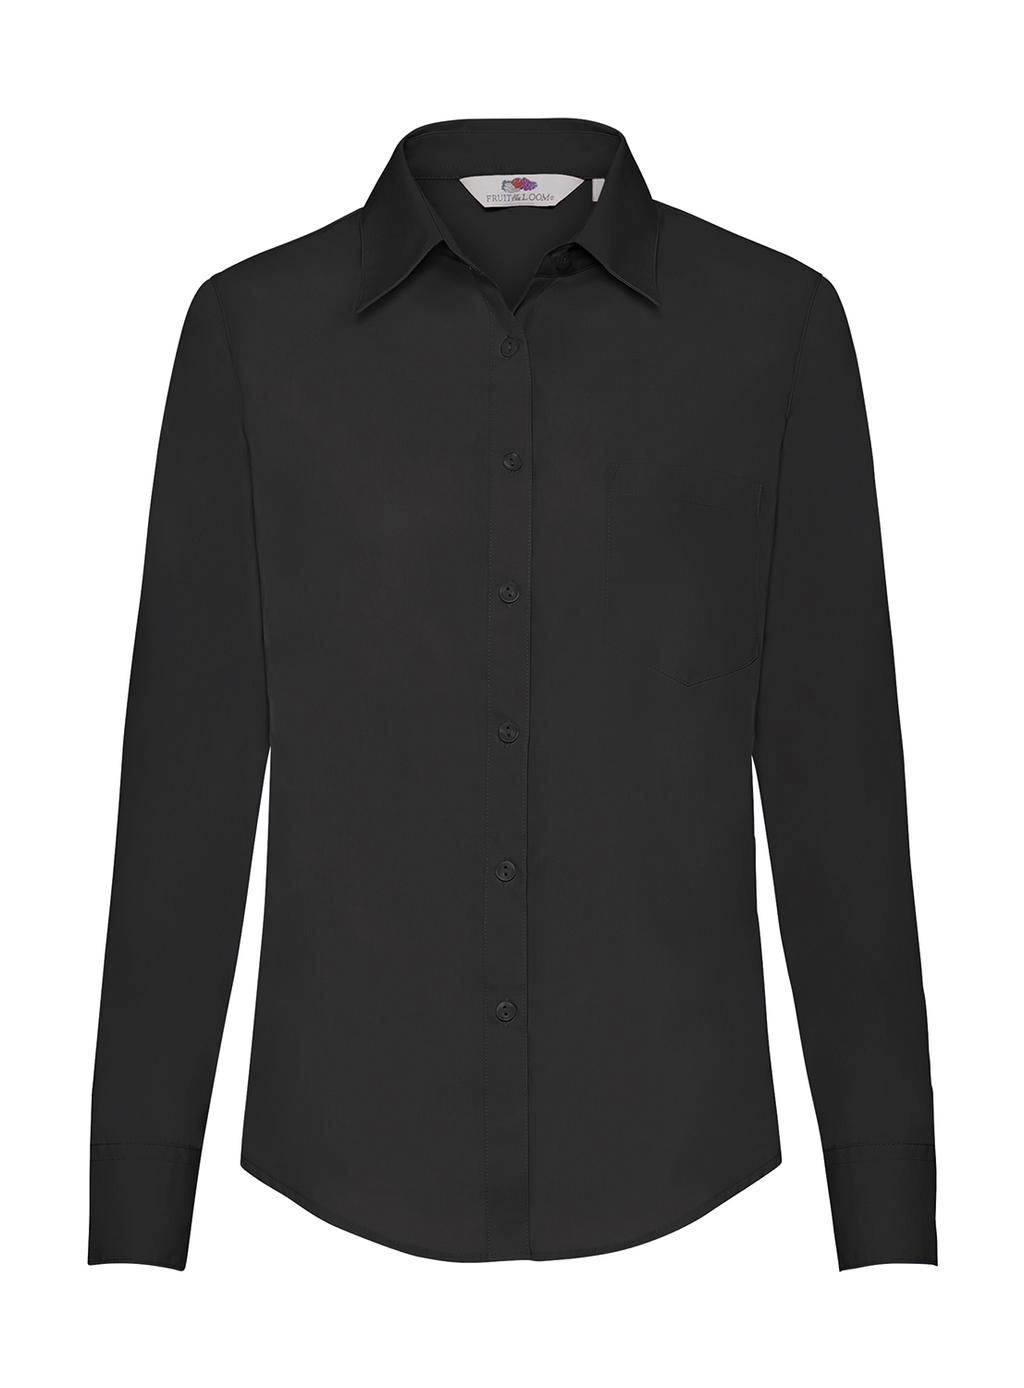 Ladies` Poplin Shirt LS zum Besticken und Bedrucken in der Farbe Black mit Ihren Logo, Schriftzug oder Motiv.